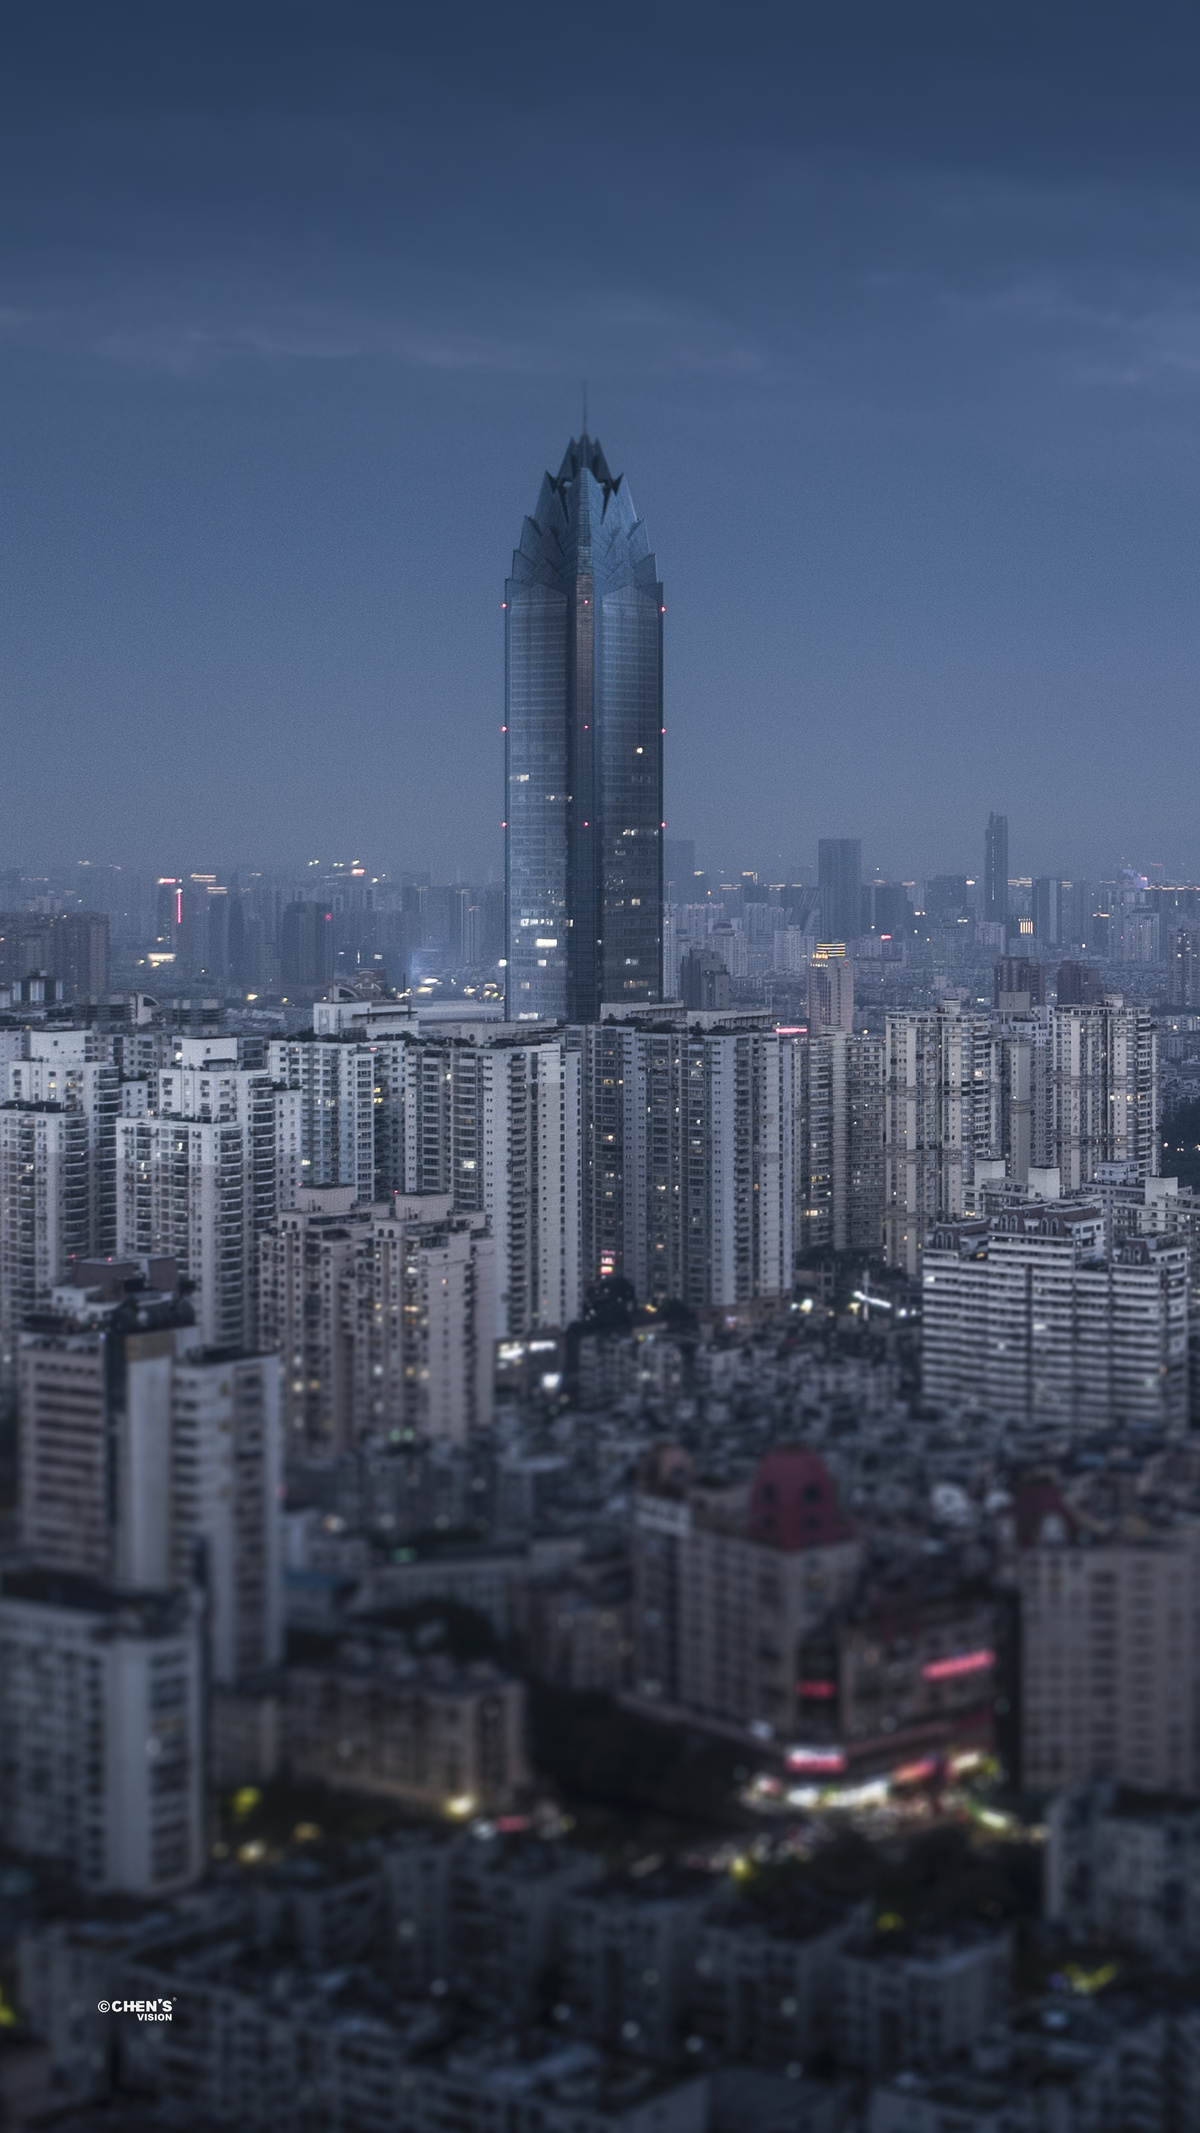 傍晚或夜晚的城市景观 高大的建筑和摩天大楼